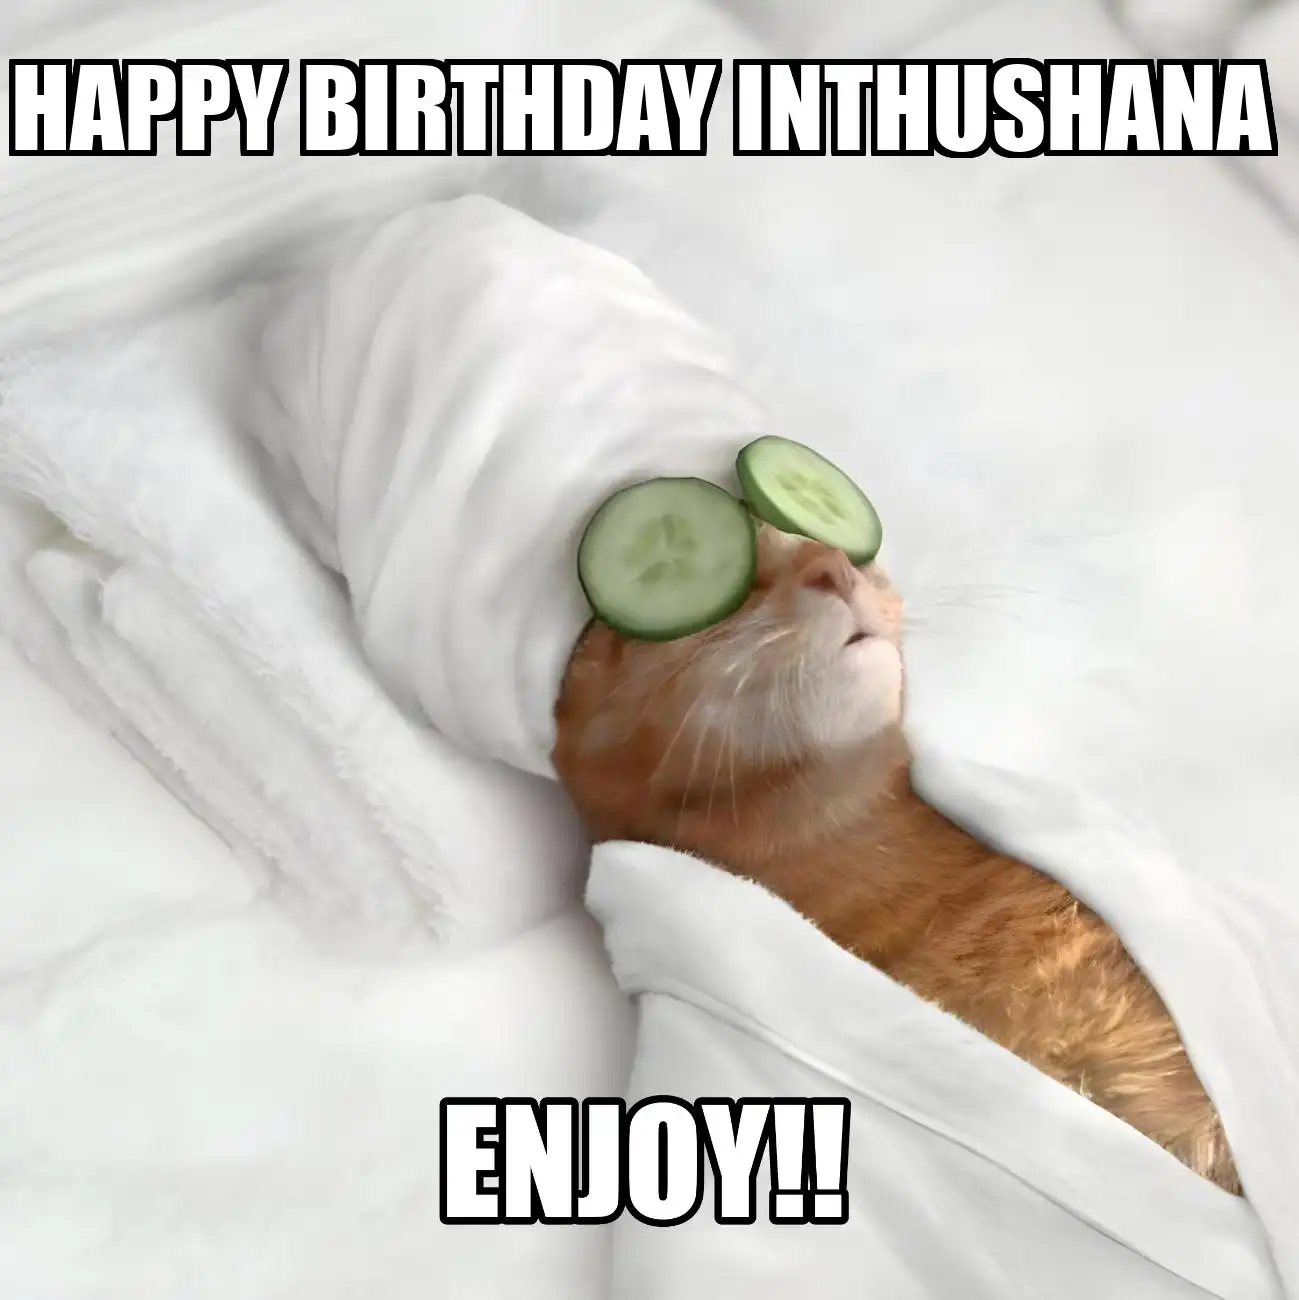 Happy Birthday Inthushana Enjoy Cat Meme